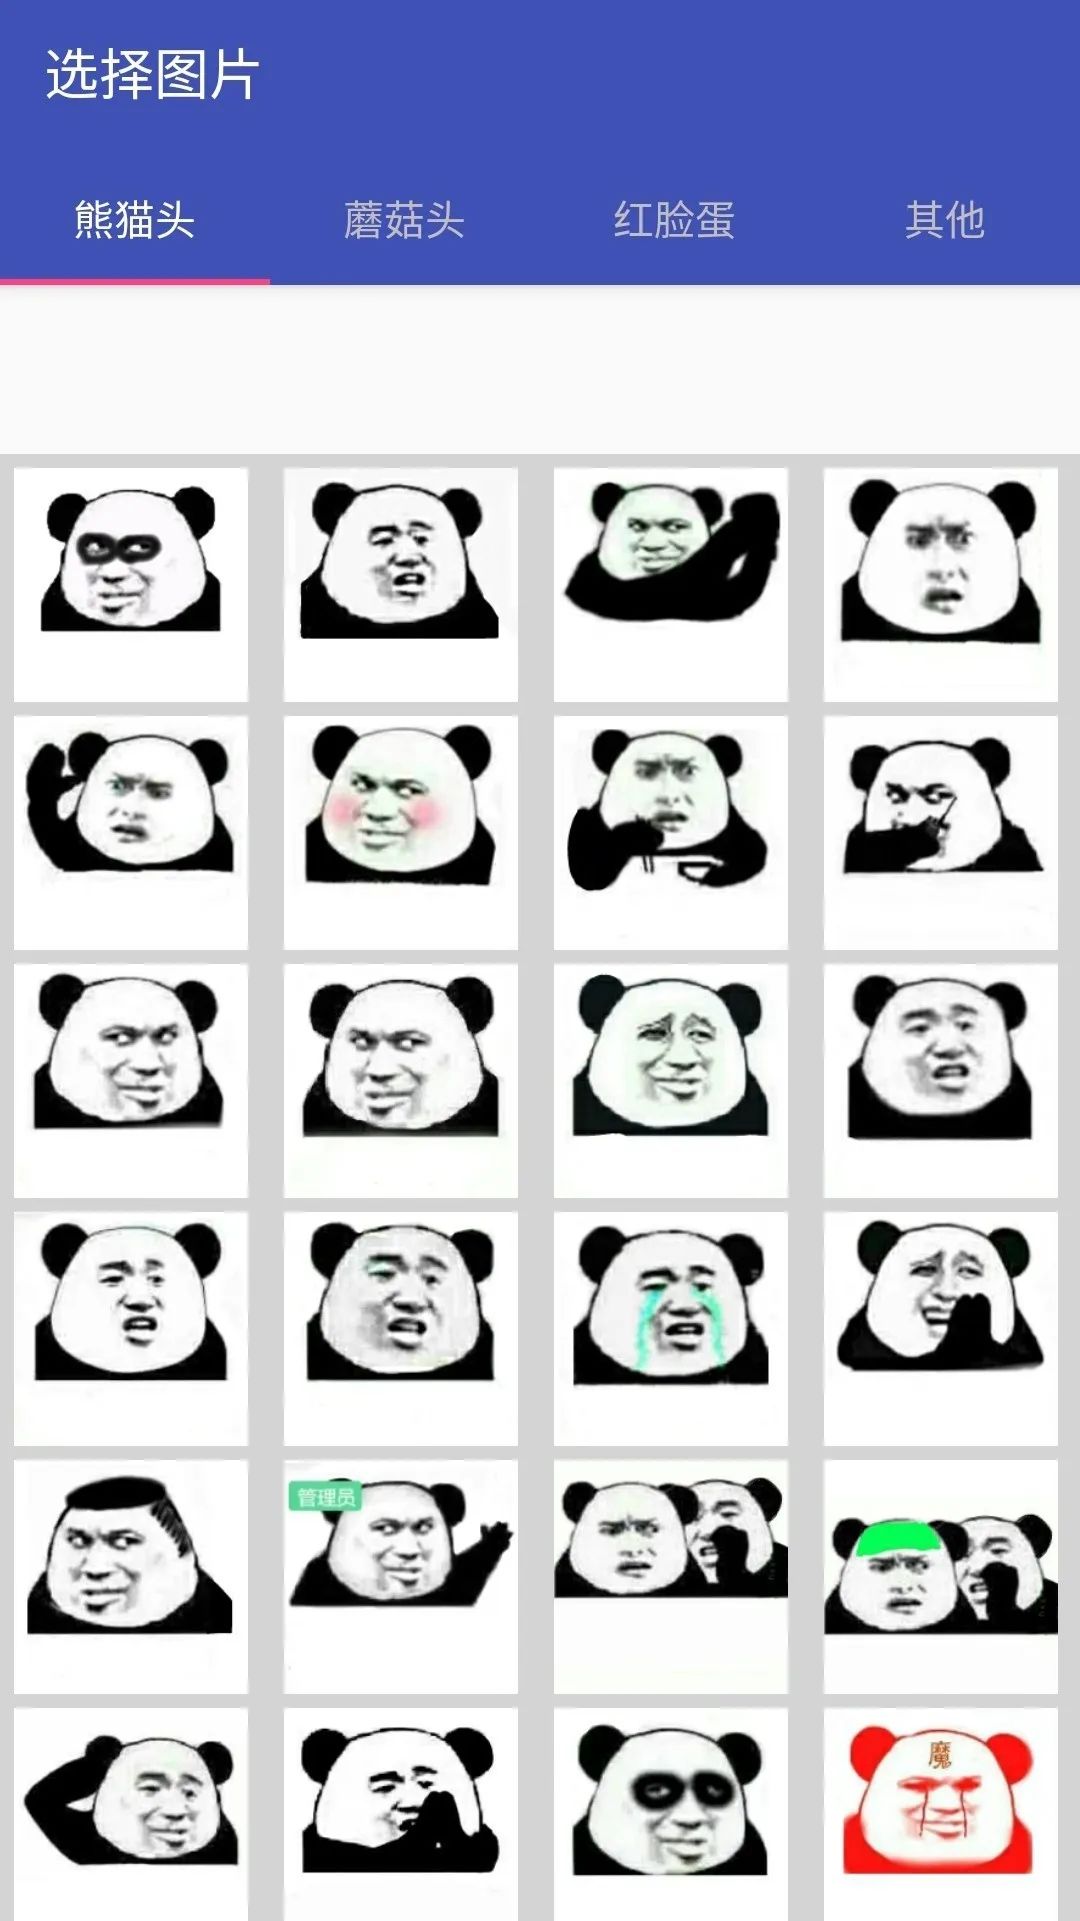 分享一款表情包制作软件，支持文字、图片、GJF动图表情包制作(图5)